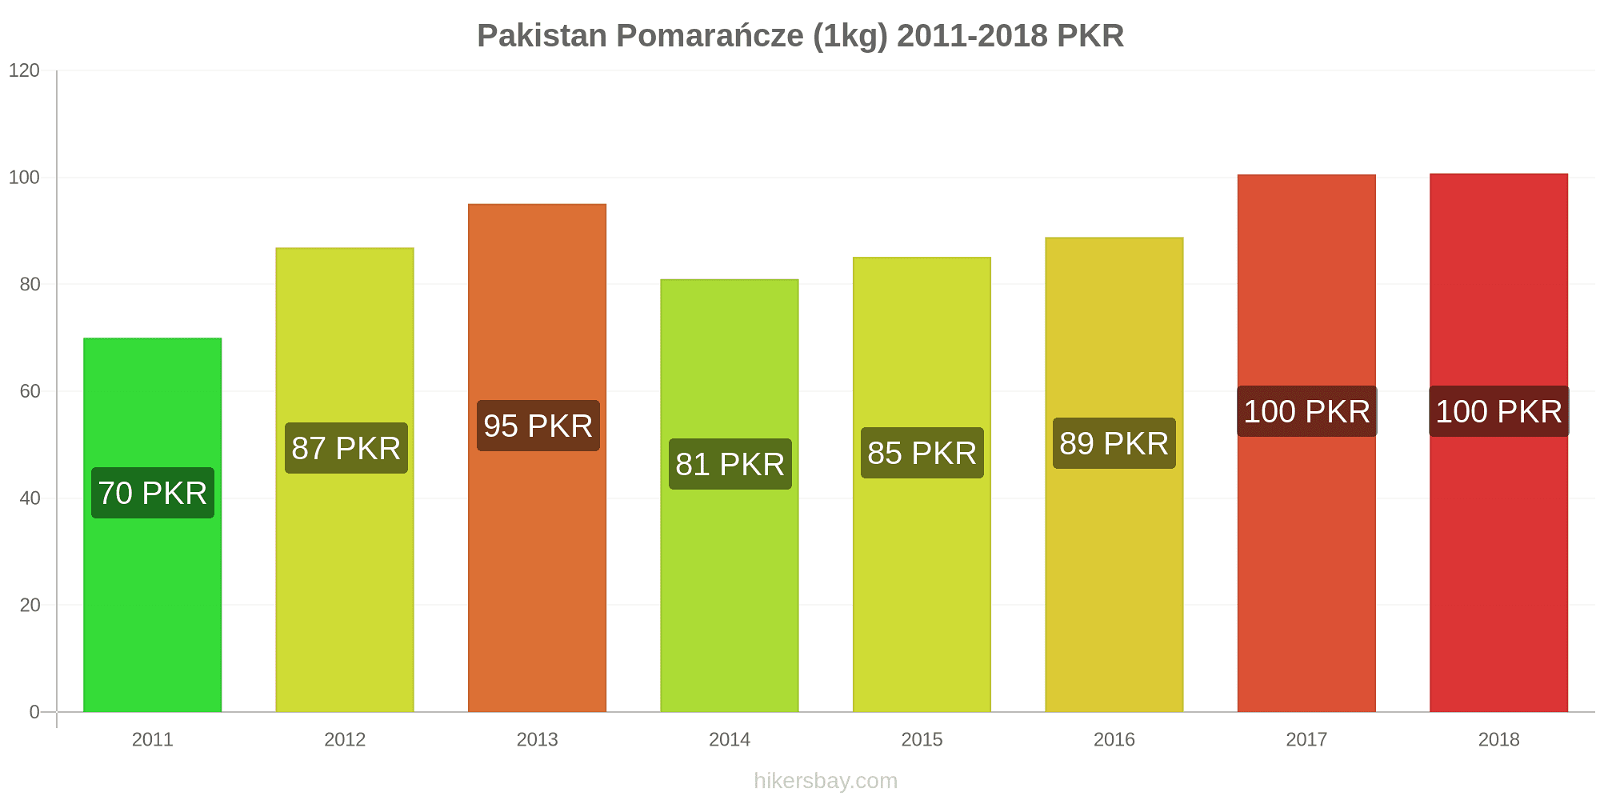 Pakistan zmiany cen Pomarańcze (1kg) hikersbay.com